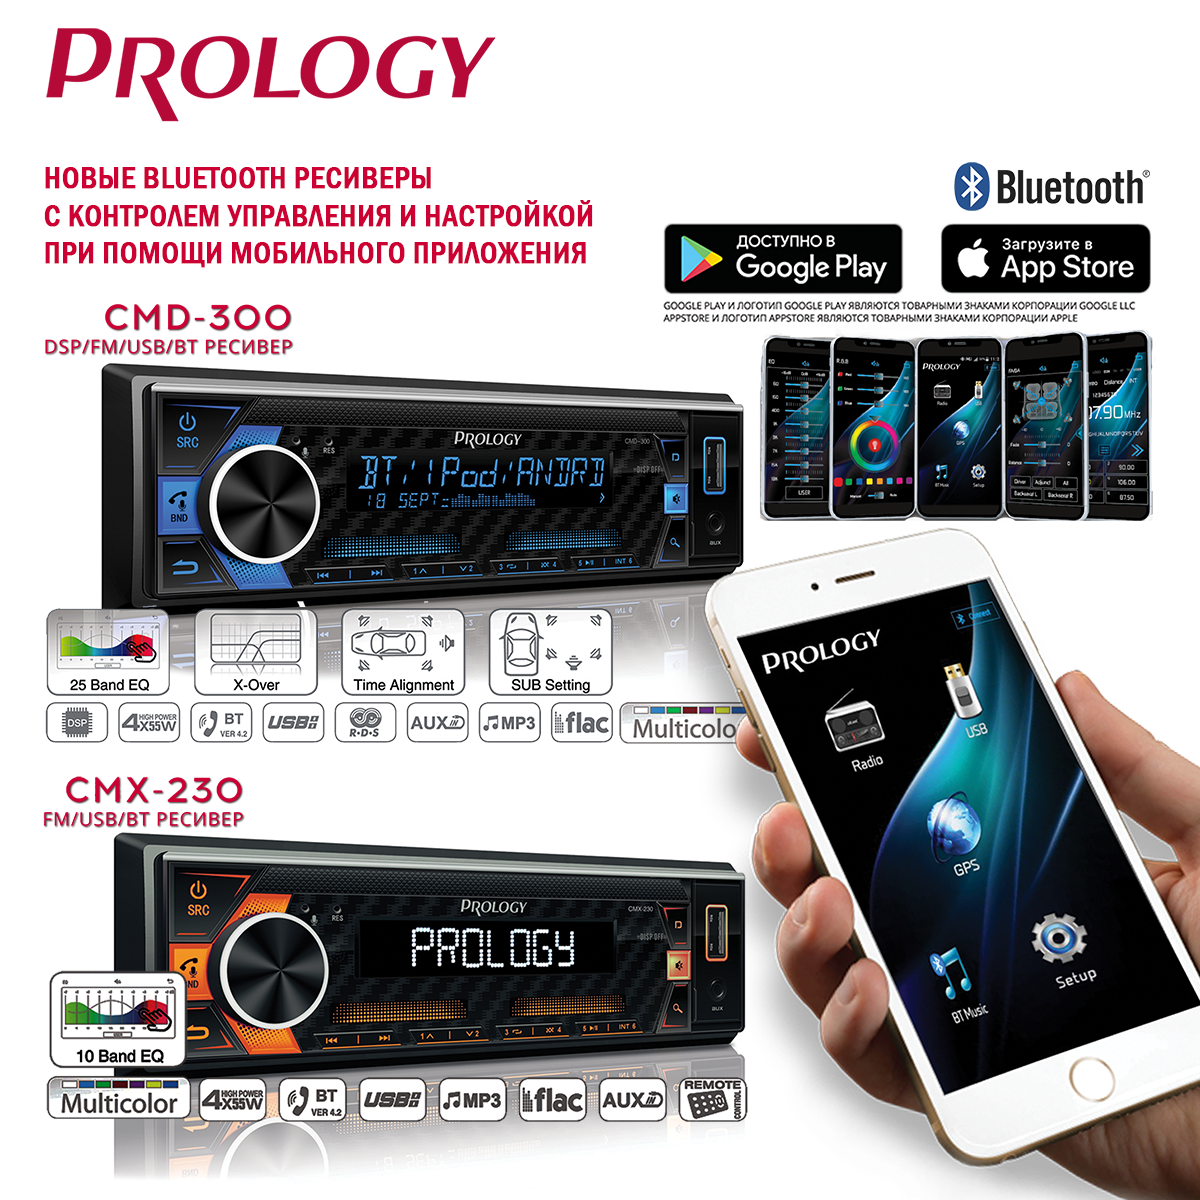 Популярные Bluetooth ресиверы PROLOGY с контролем управления и настройкой при помощи мобильного приложения.PROLOGY CMD-300 и CMX-230 снова в Продаже!